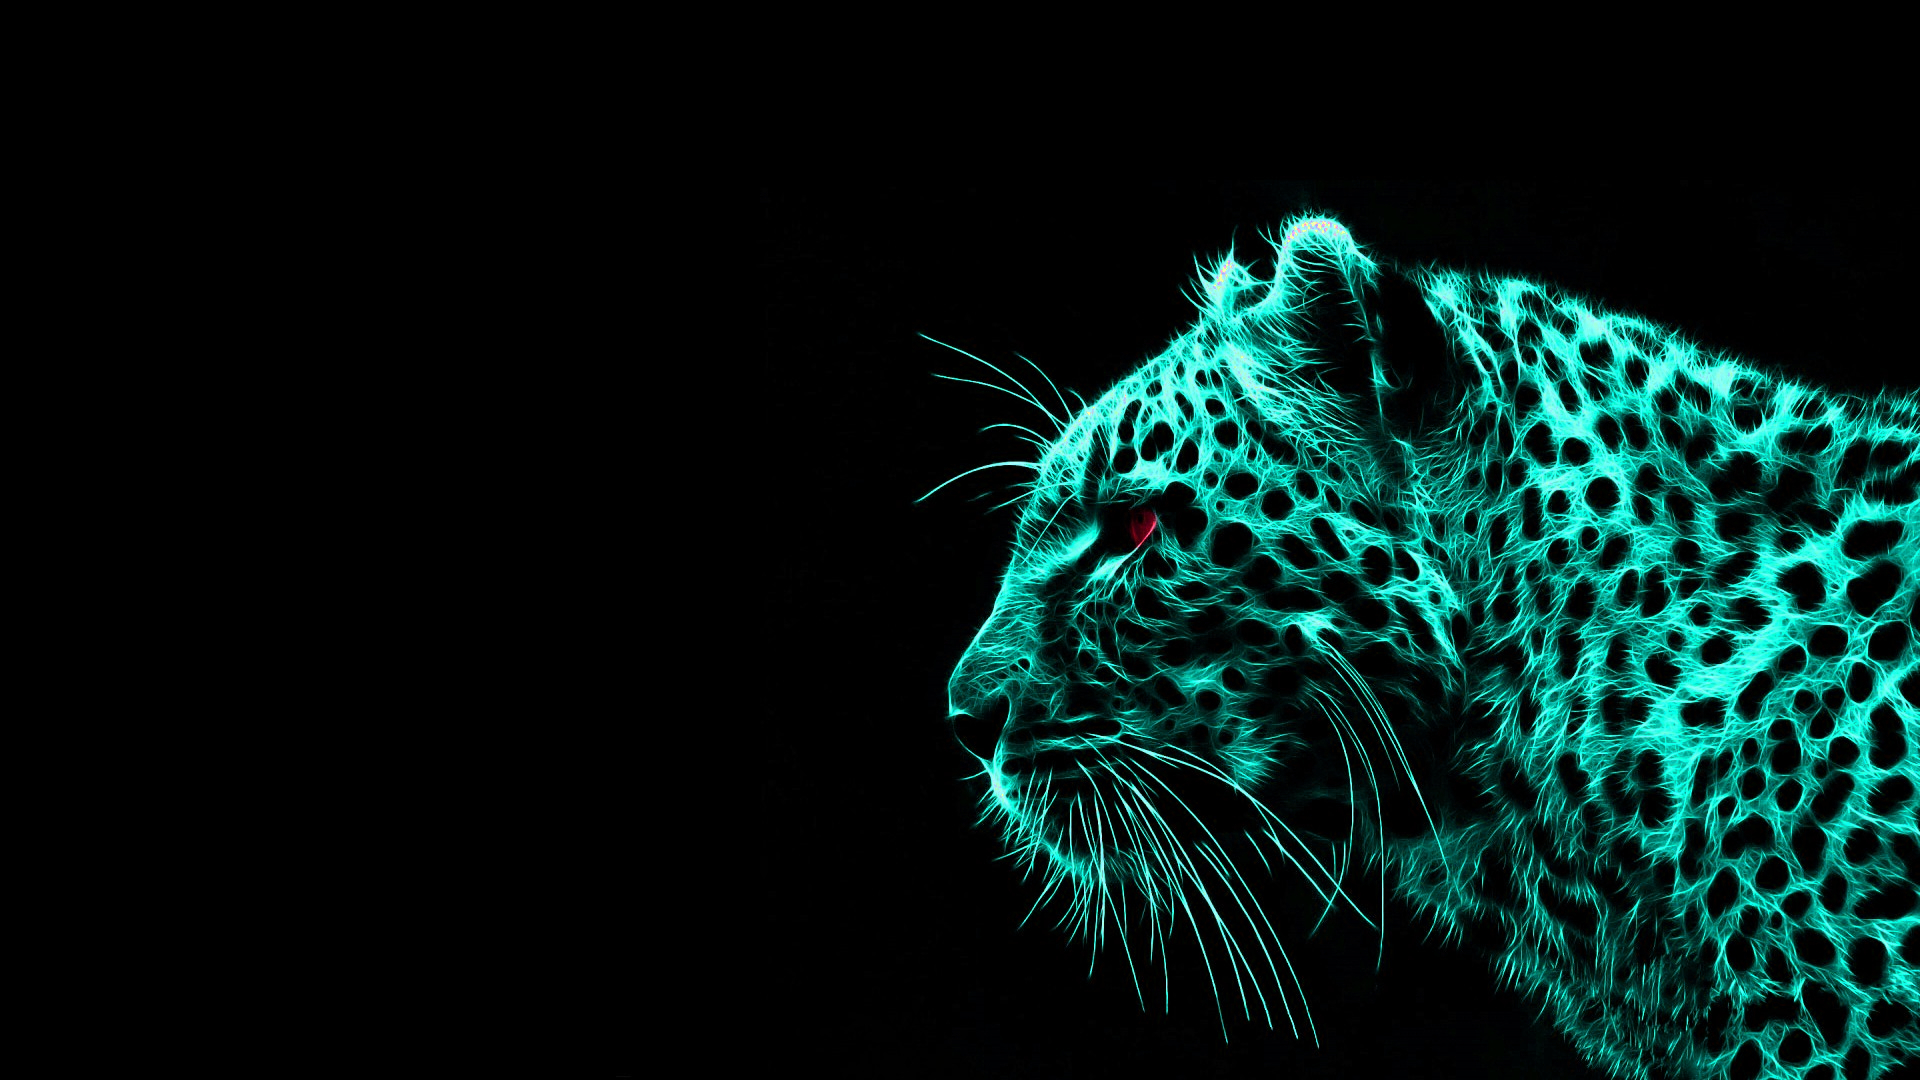 Leopard Digital Art Dark Background Animals Simple Background Minimalism 1920x1080